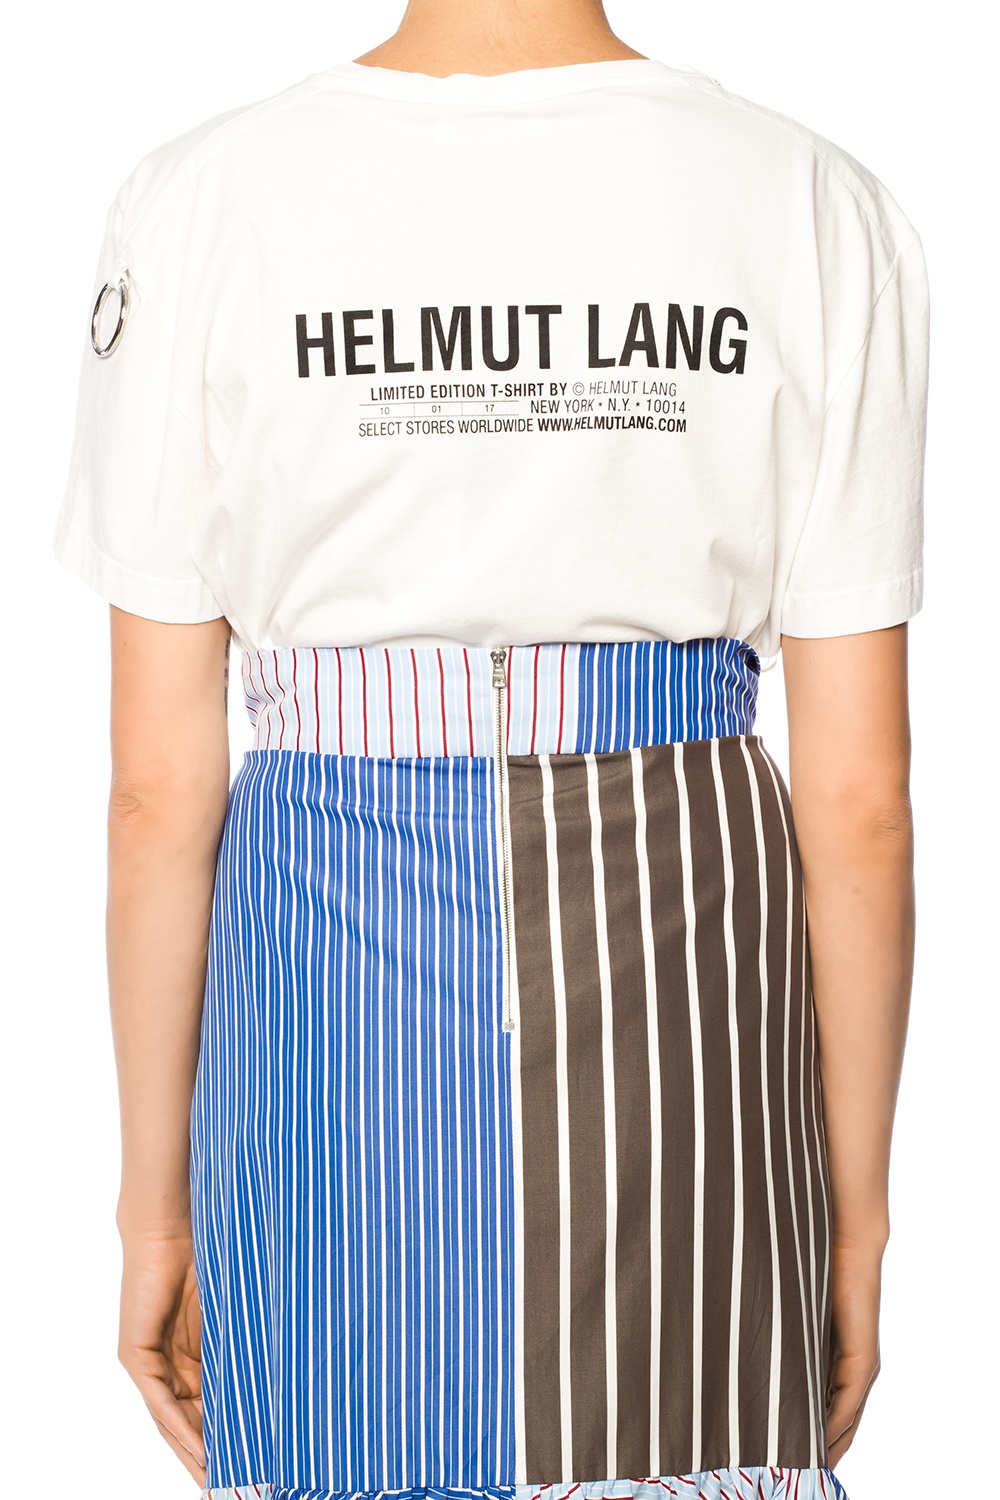 Helmut Lang Logo-printed T-shirt | Women's Clothing | Vitkac